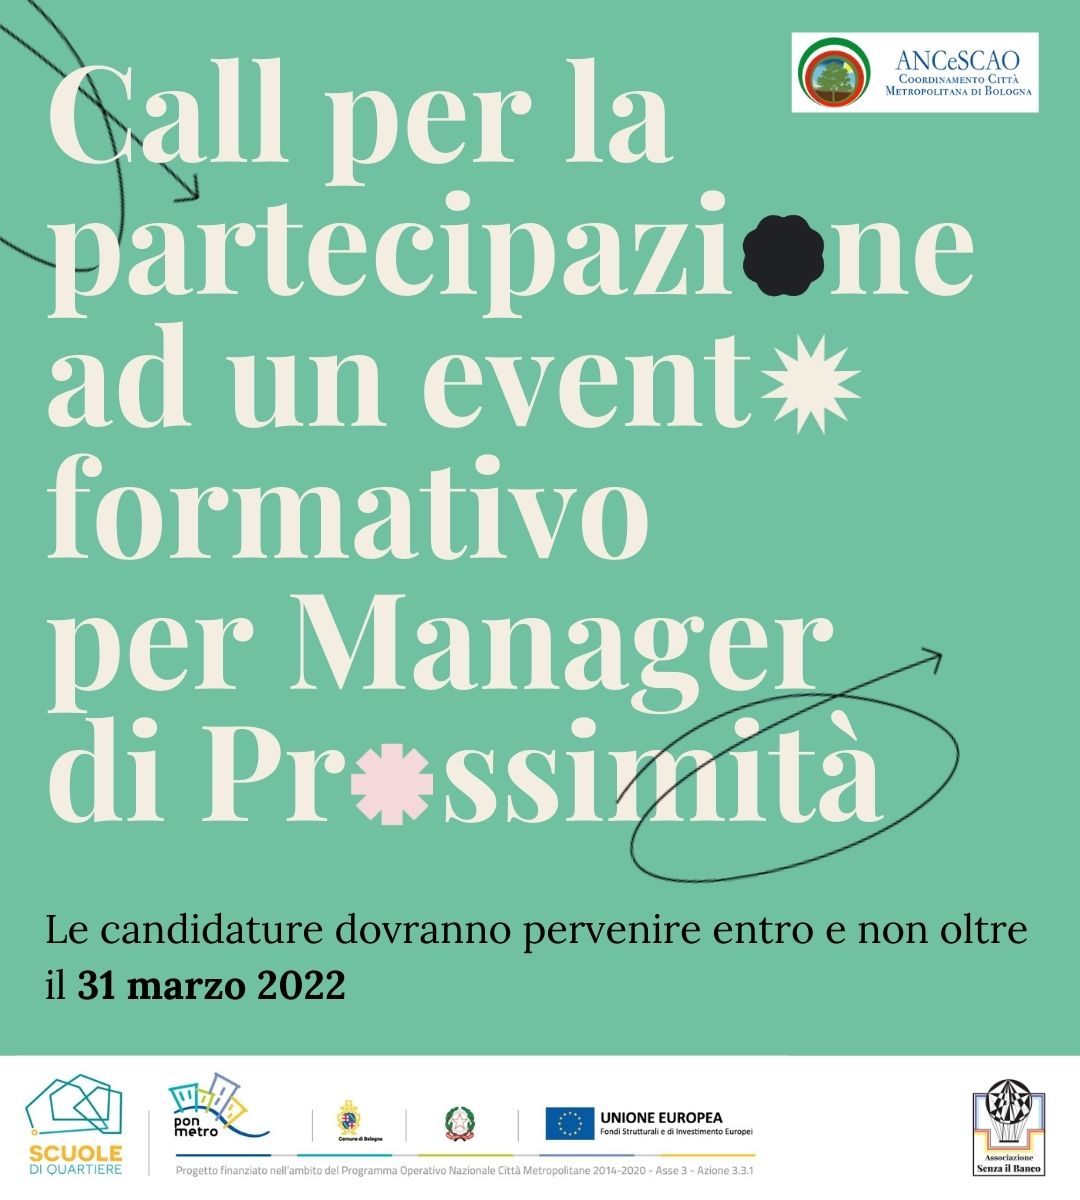 ANCeSCAO Bologna promuove una Call per un evento formativo per manager di prossimità